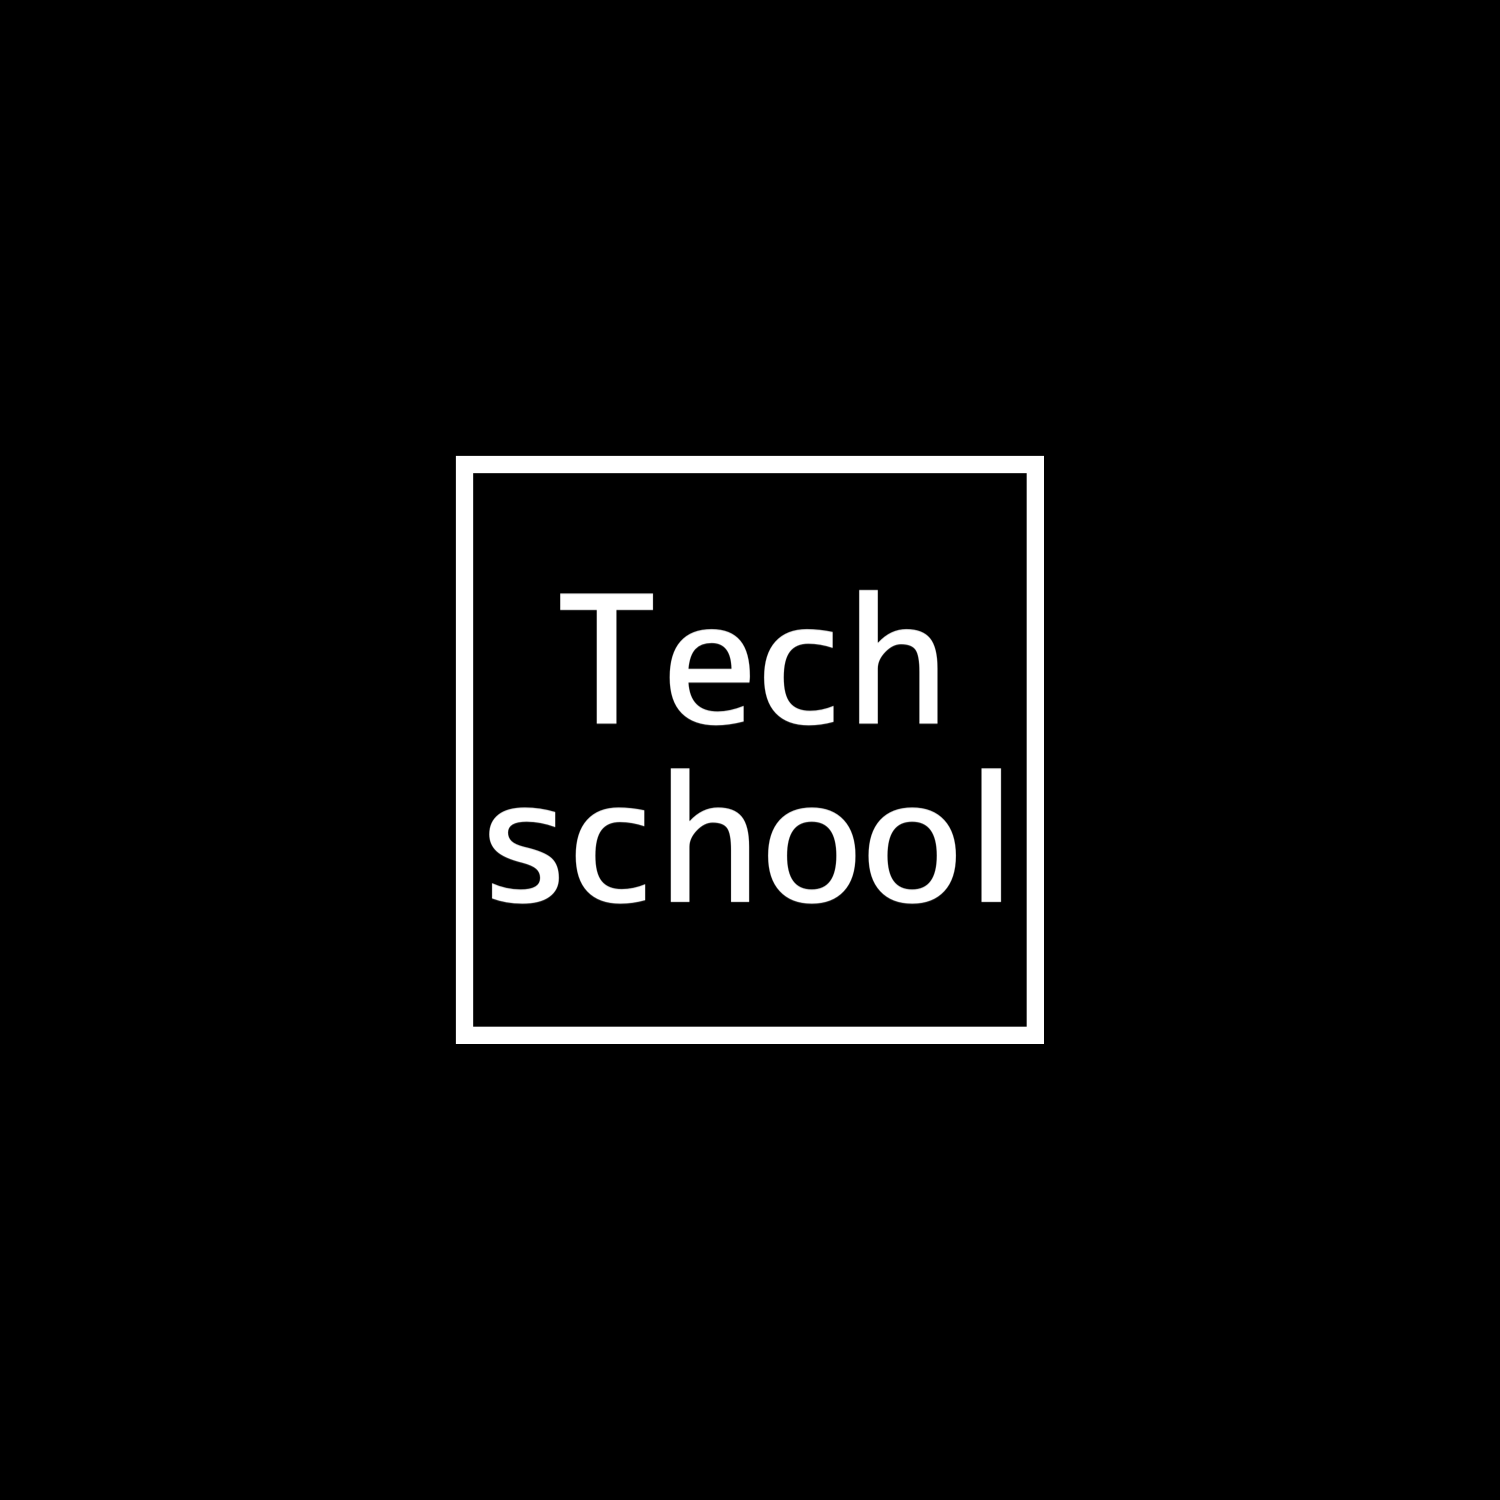 Tech School 西野教室のロゴ